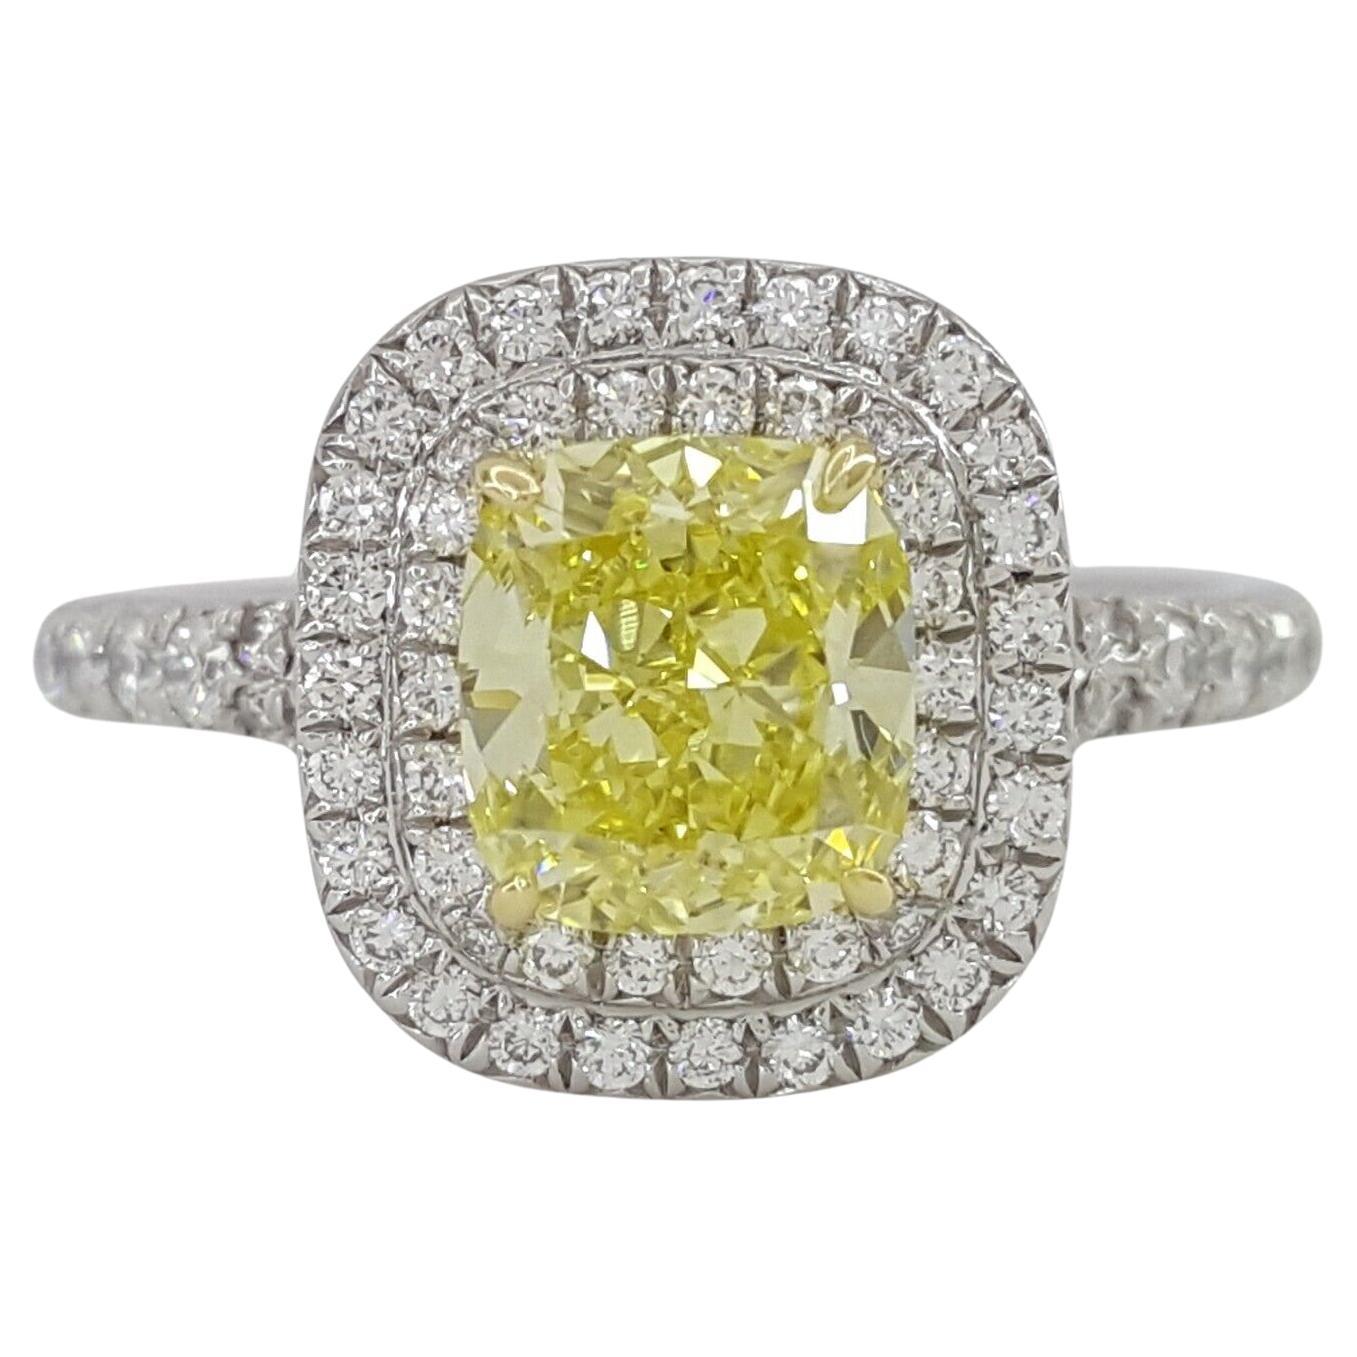 Tiffany & Co. Soleste, bague de fiançailles fantaisie jaune intense avec halo de diamants